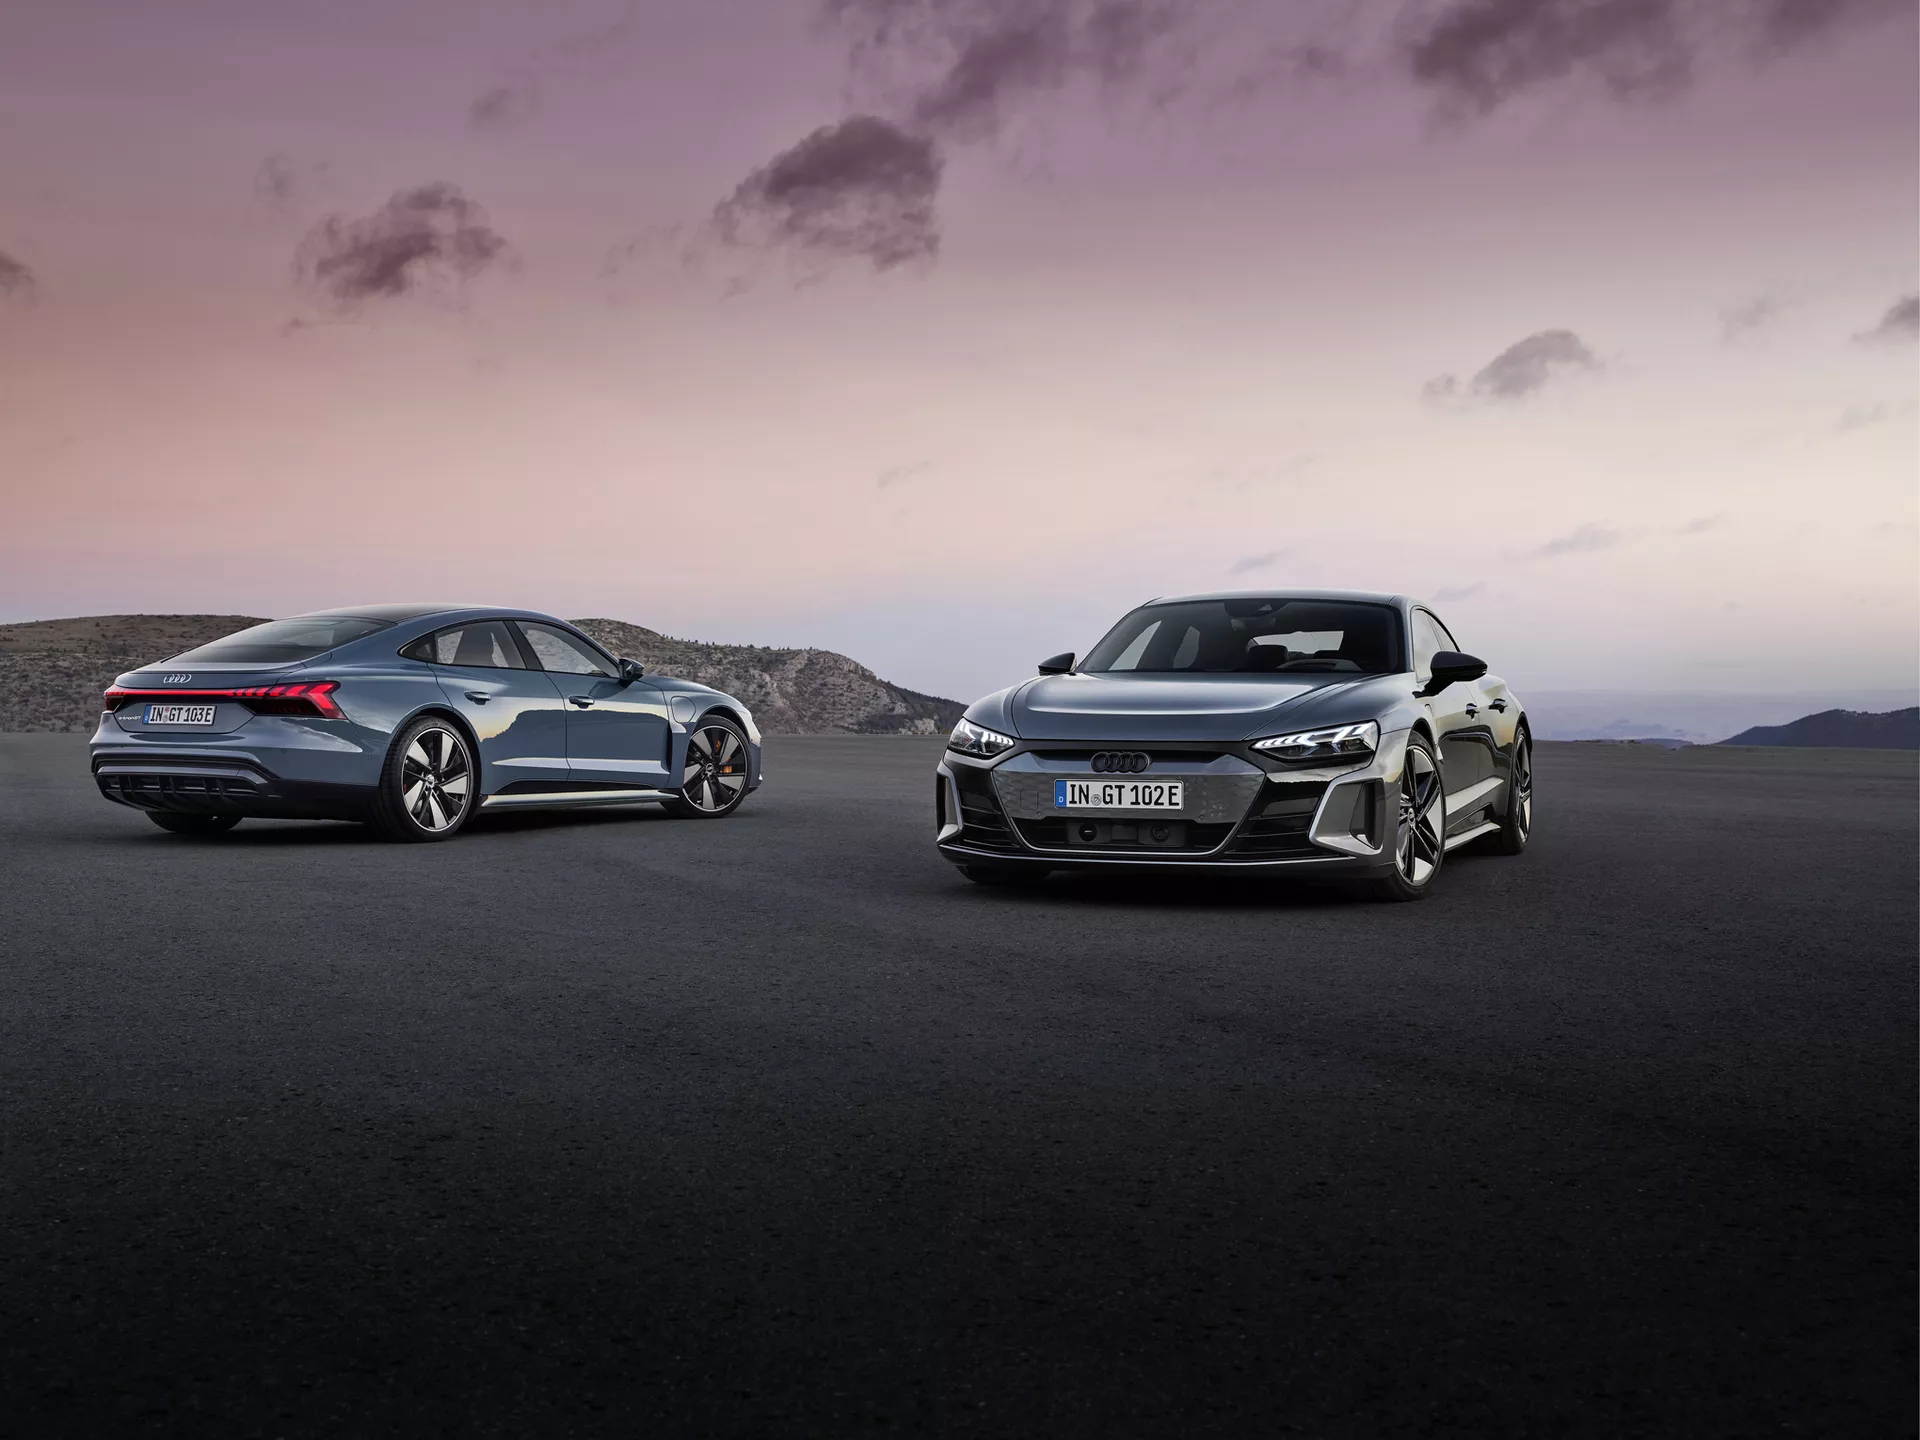 Audi представила премиальный электроседан e-tron GT на платформе Porsche Taycan — цены начинаются от 99 800 евро